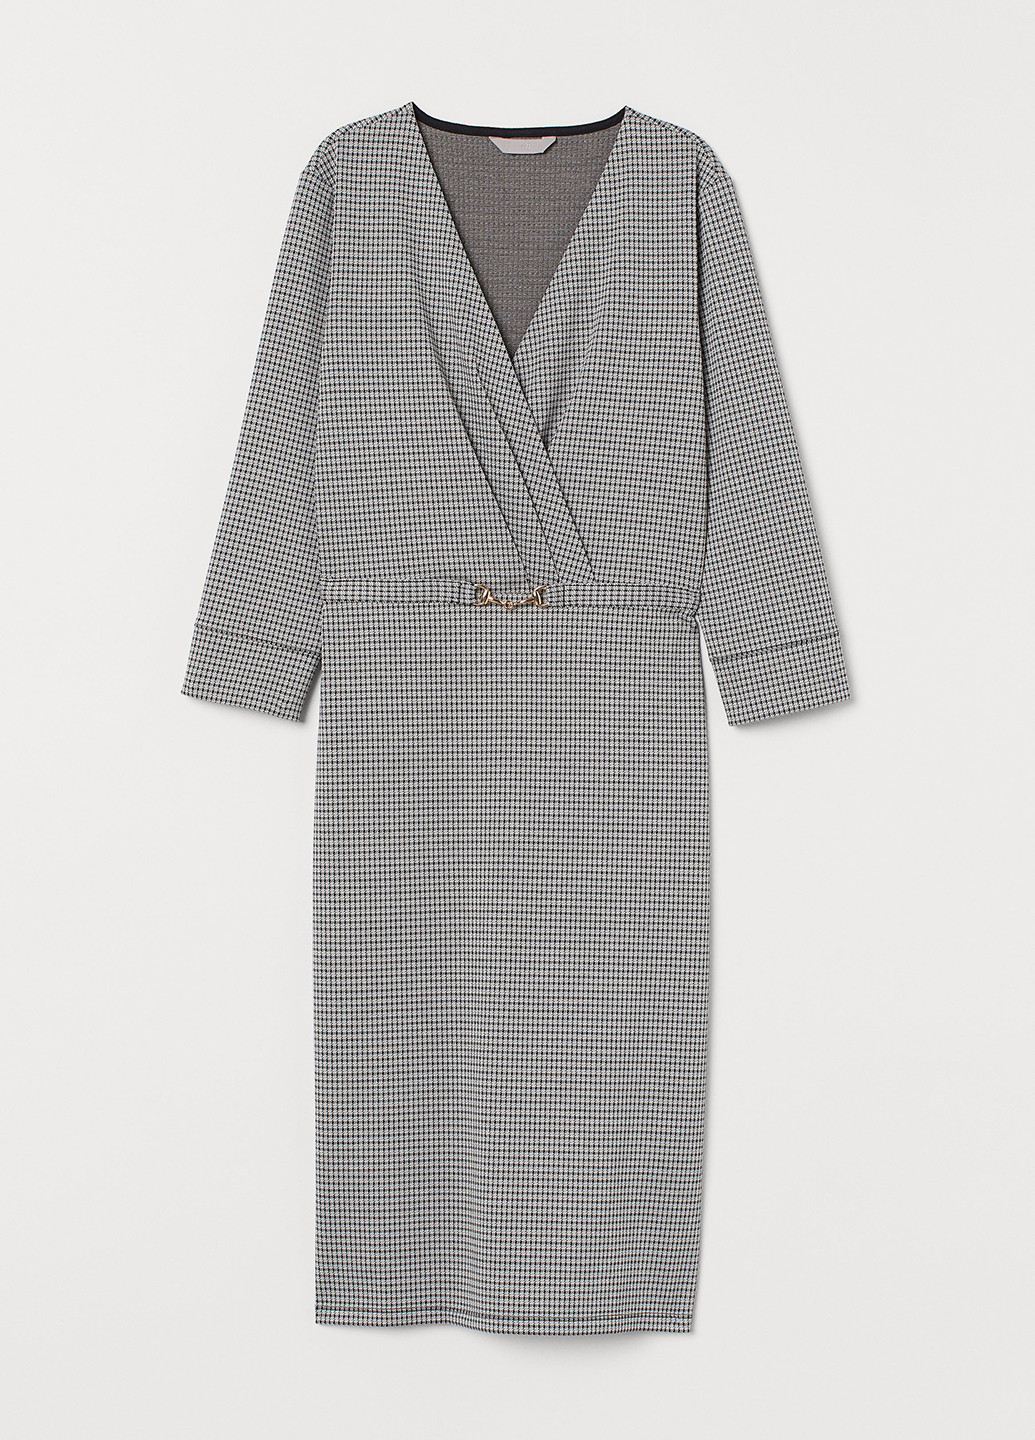 Черно-белое деловое платье на запах, футляр H&M с узором пье-де-пуль «гусиная лапка»